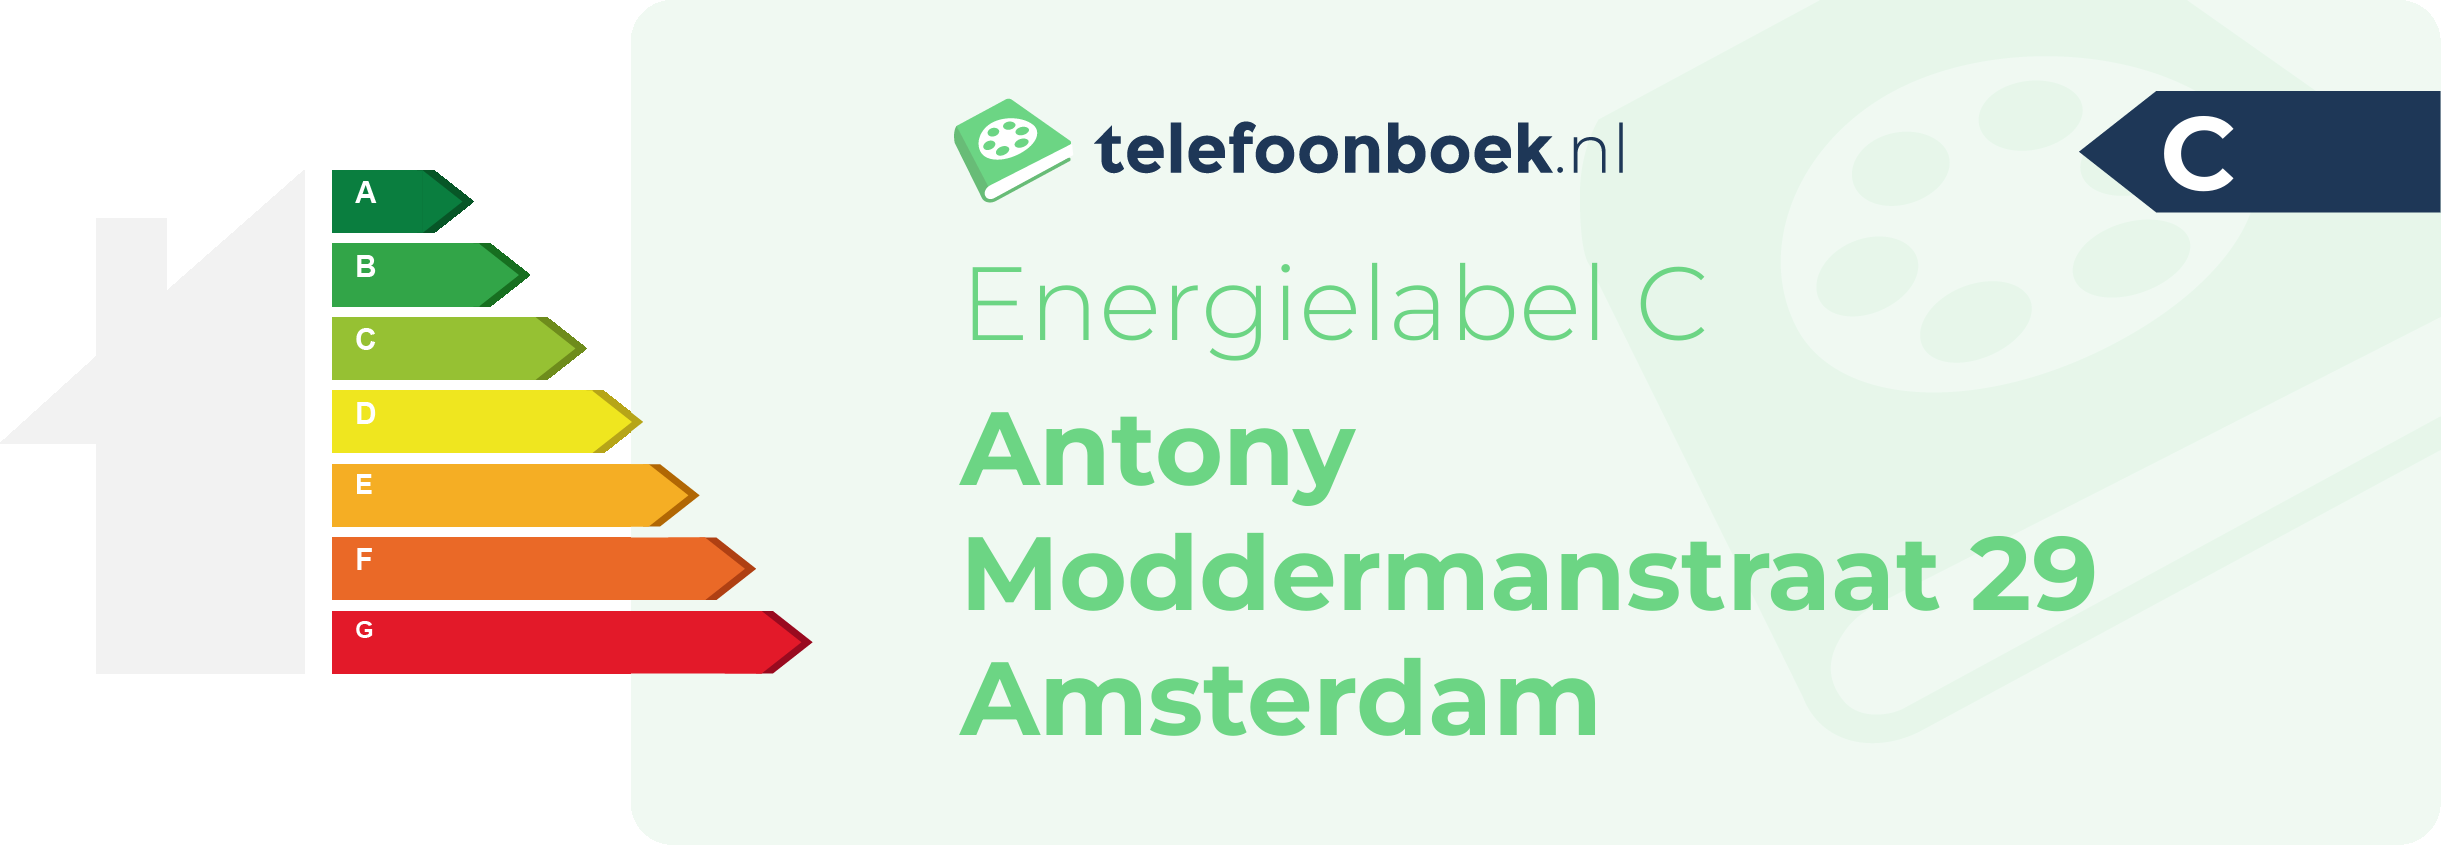 Energielabel Antony Moddermanstraat 29 Amsterdam